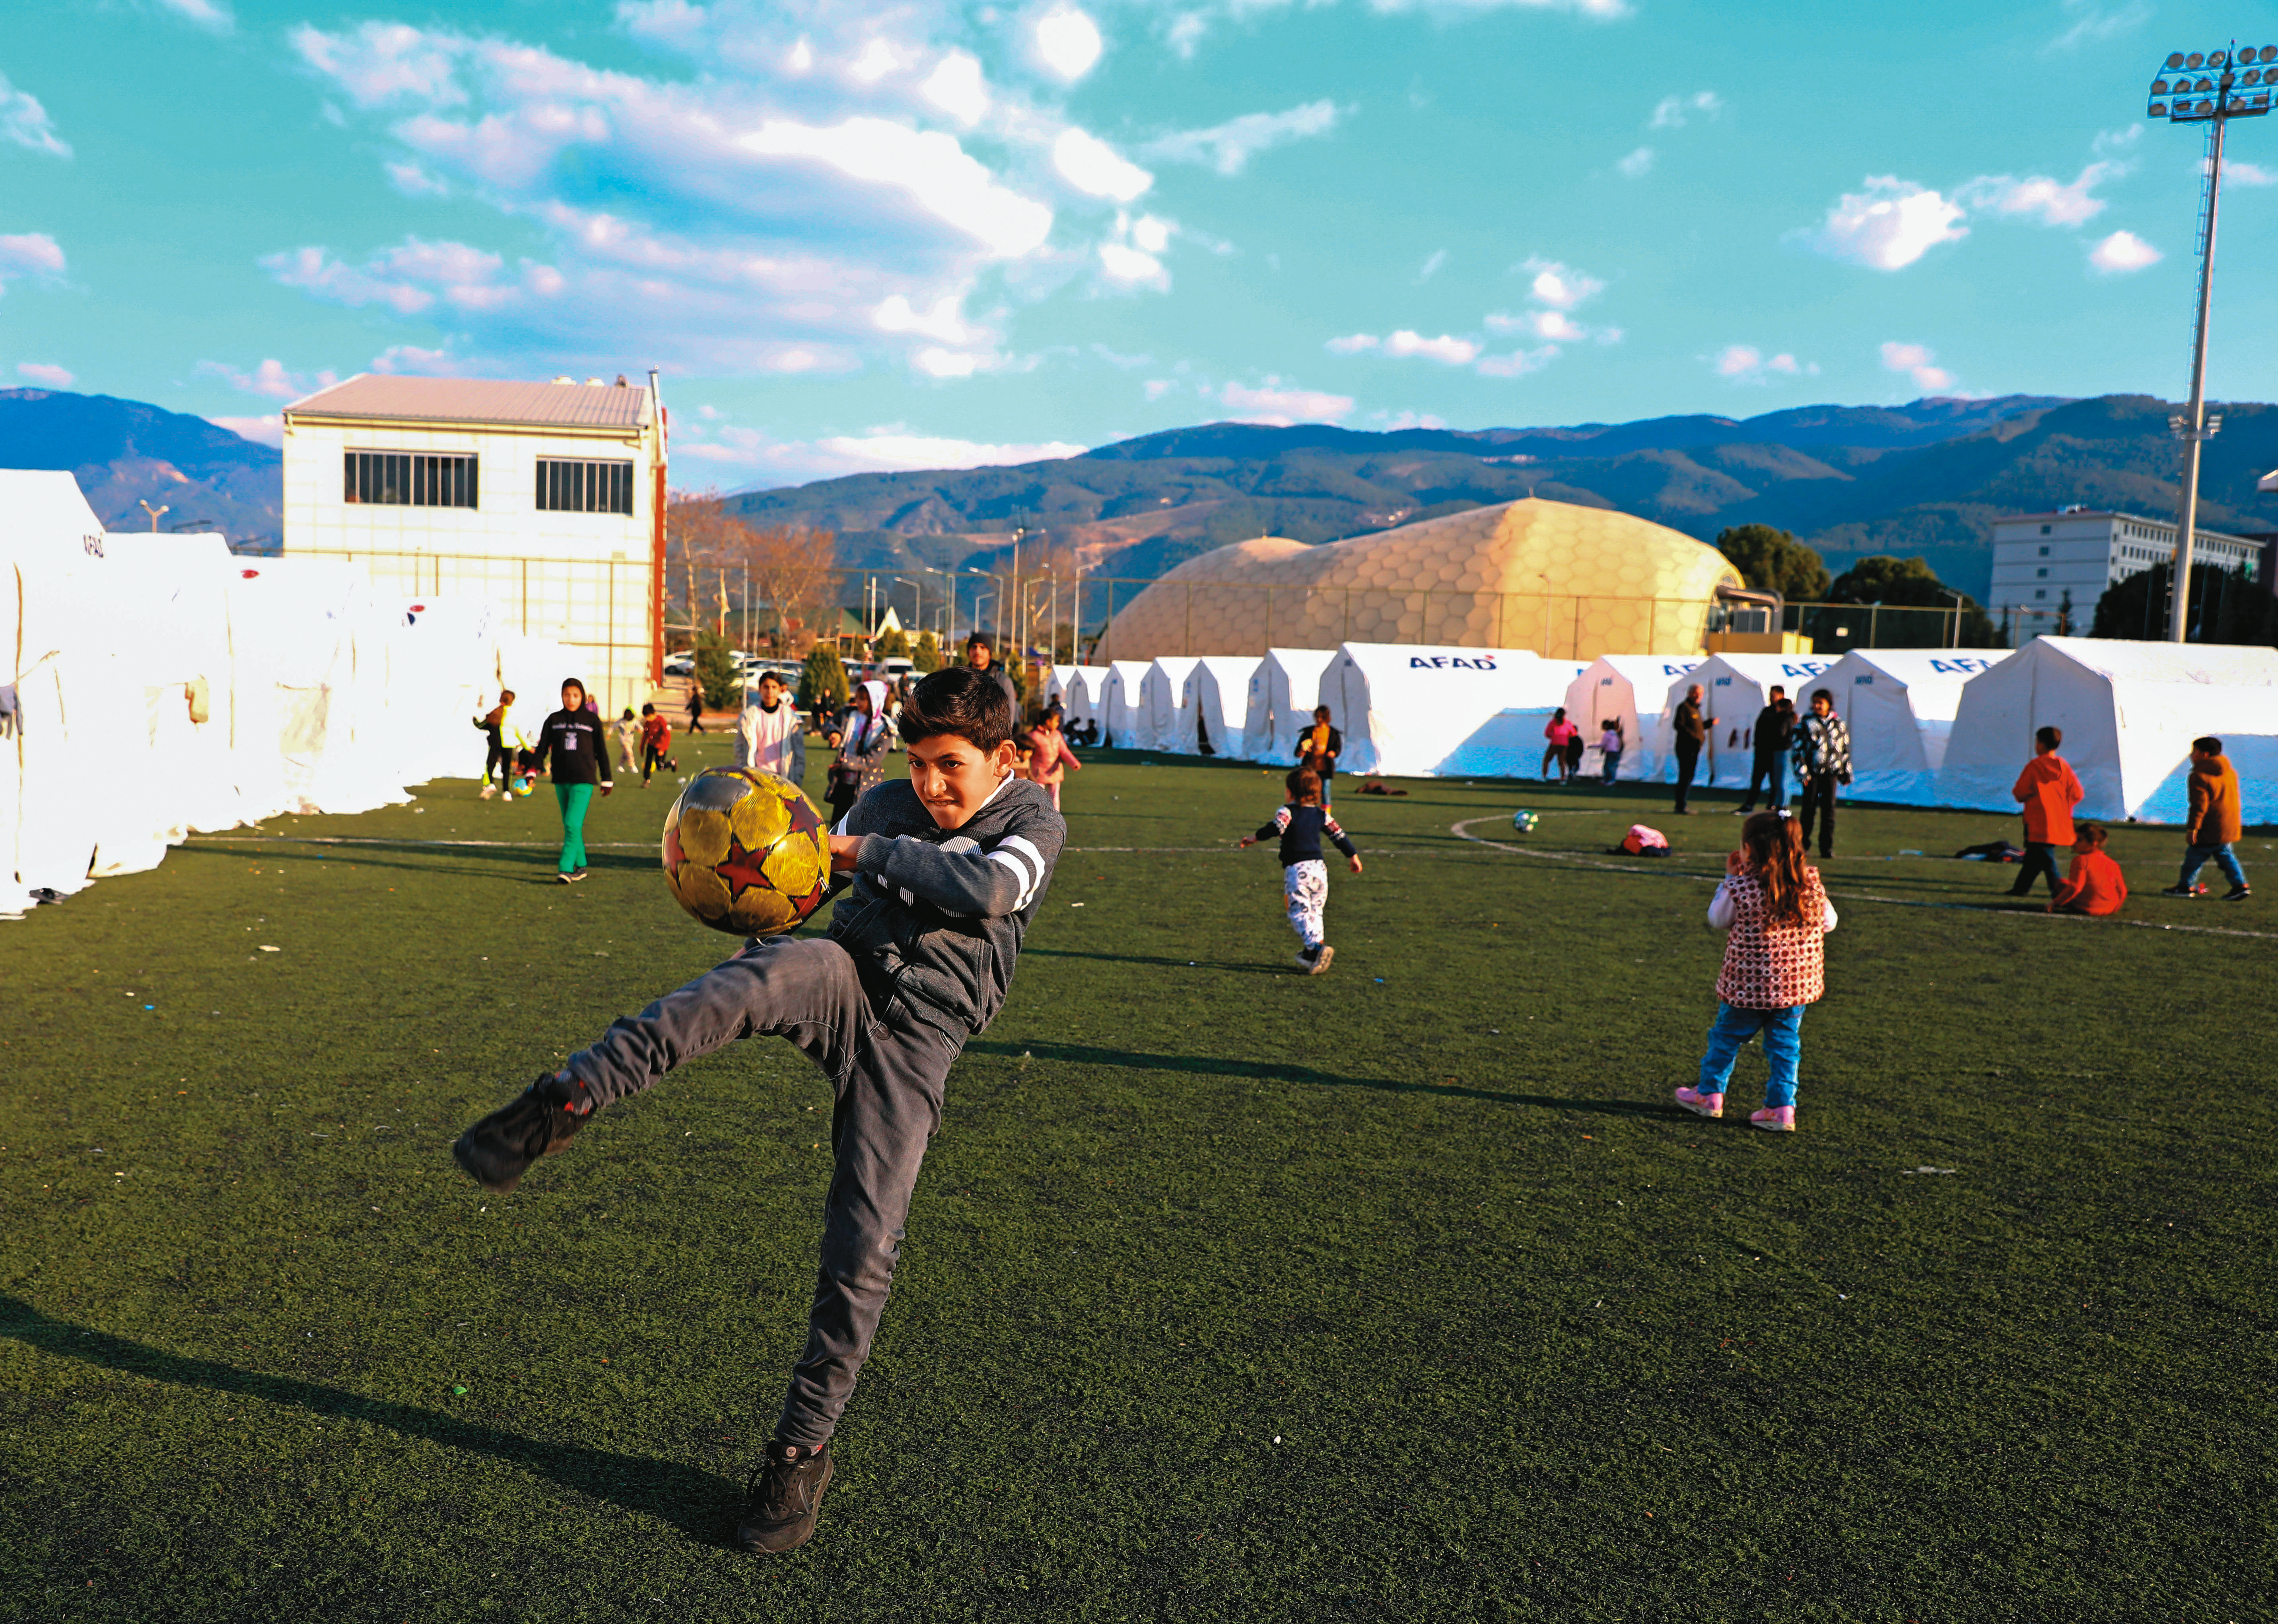 倖存孩童們在收容所綠地上踢球玩樂，他們的笑容，正是土耳其期盼的未來。